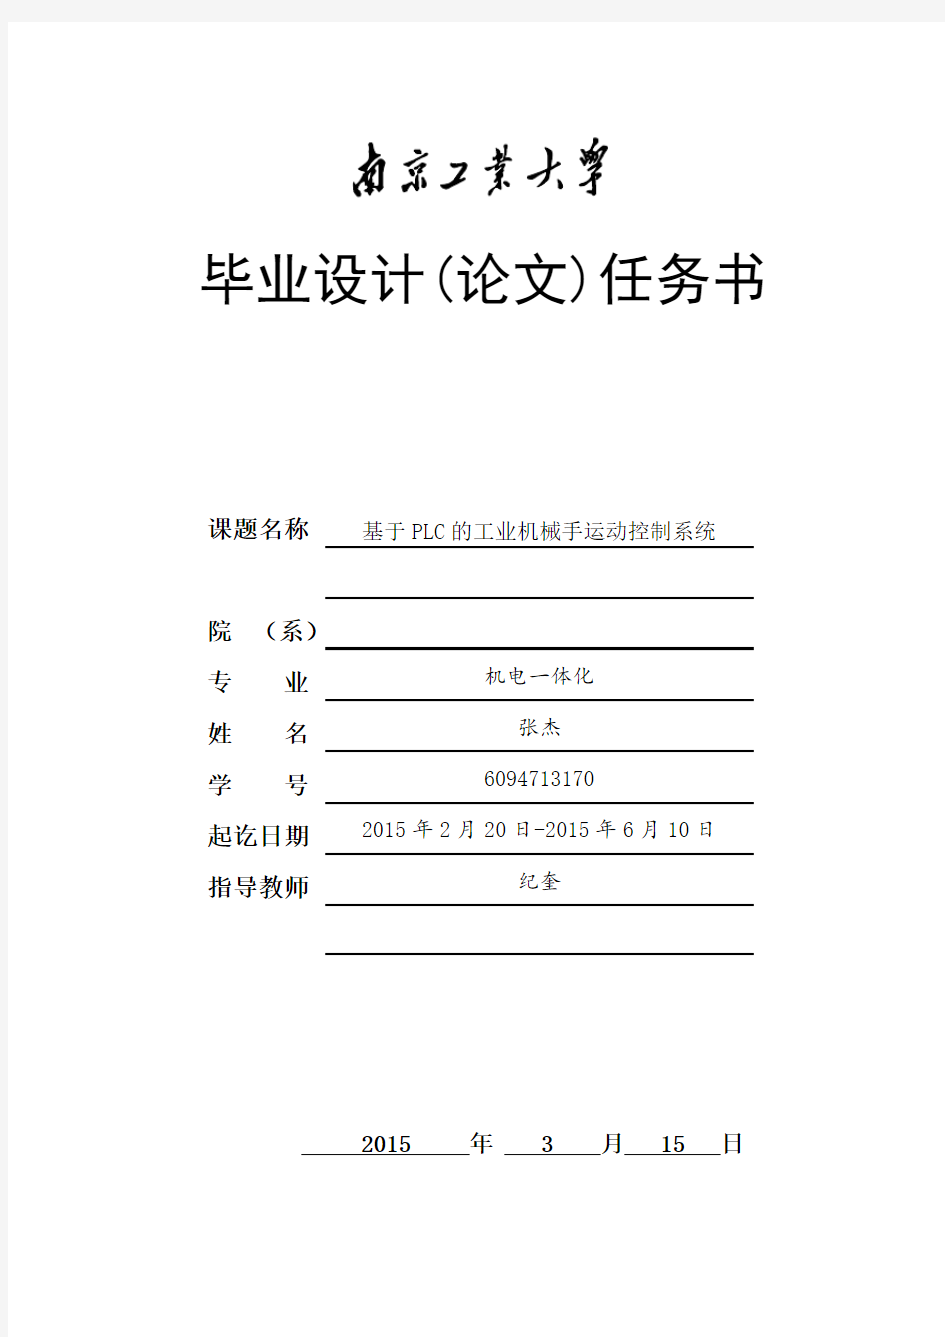 南京工业大学毕业设计(论文)任务书---张杰